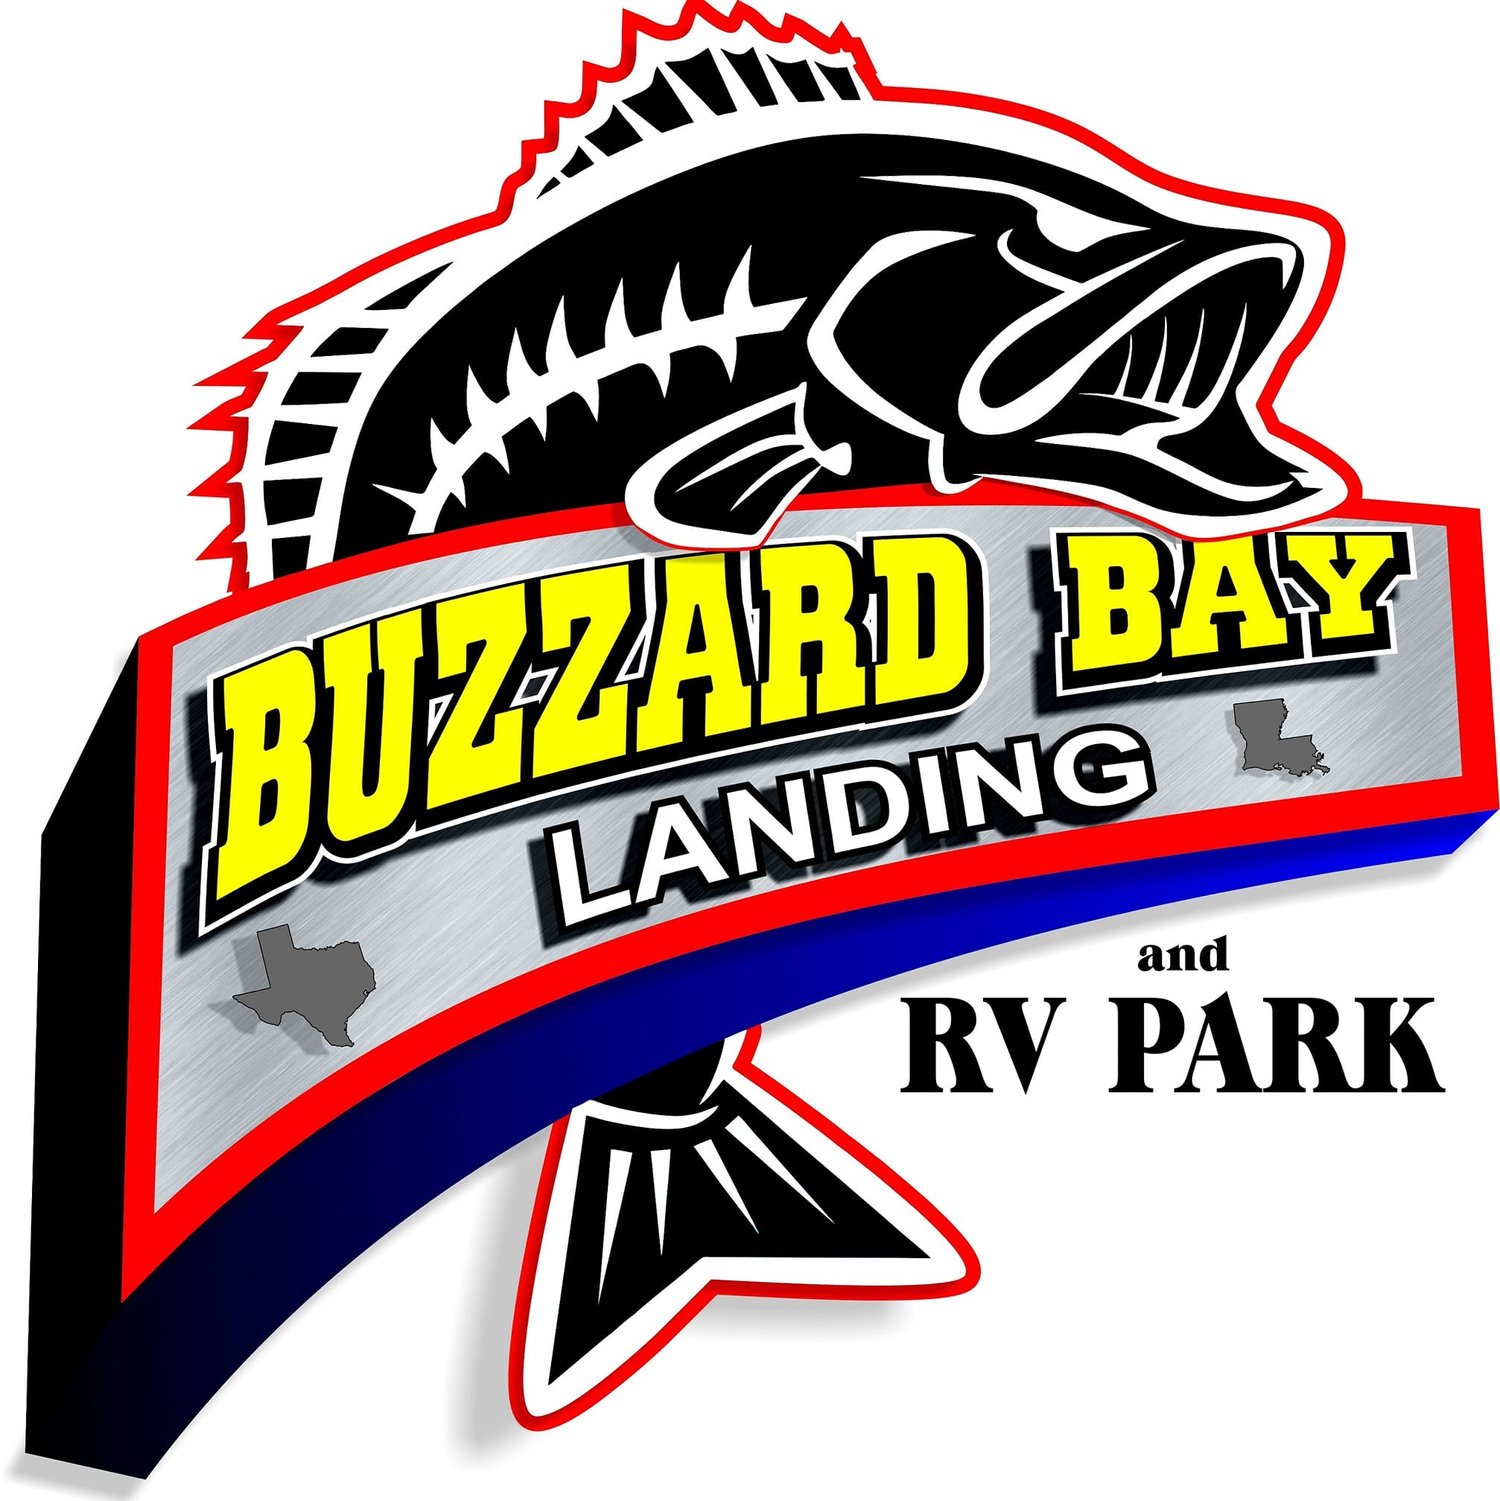 Buzzard Bay